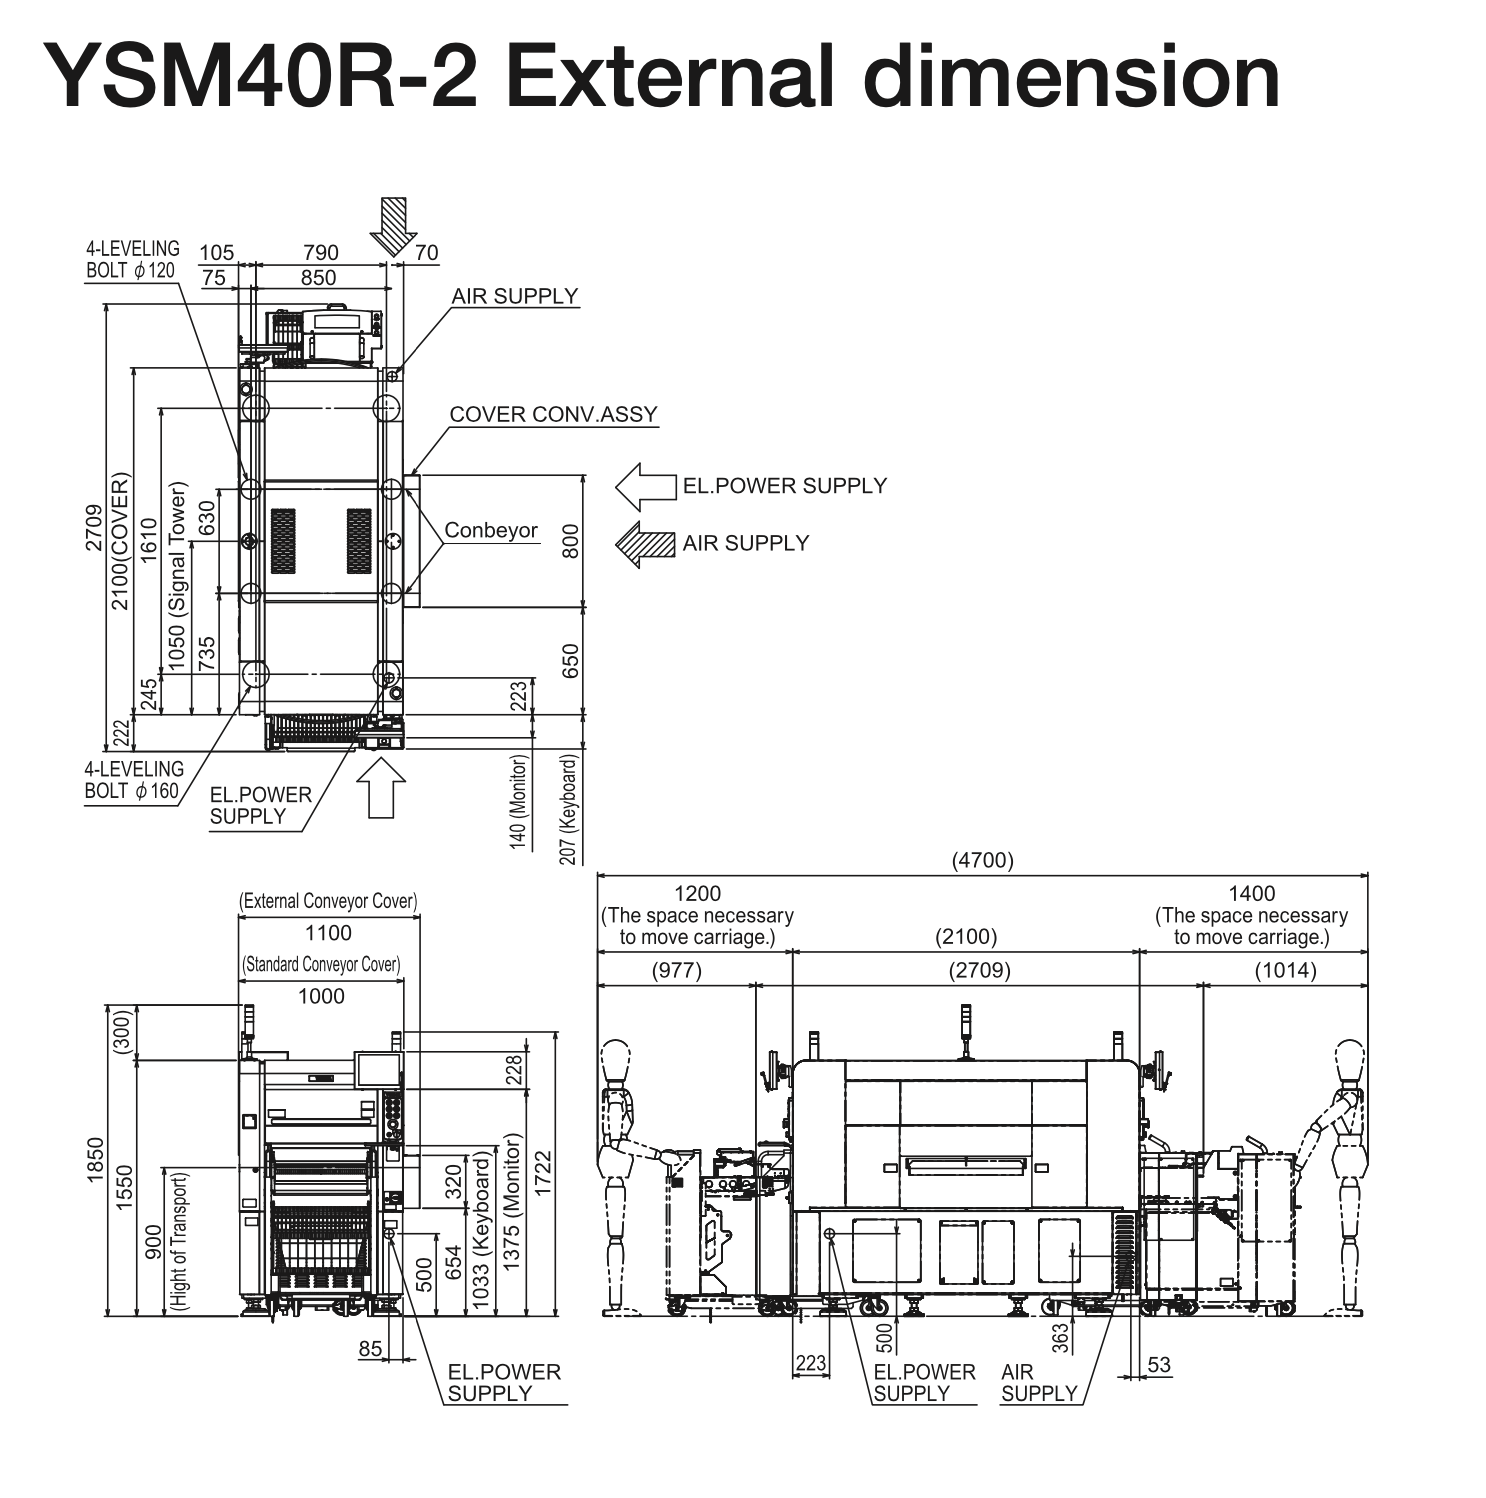 ysm40r-2 dimension